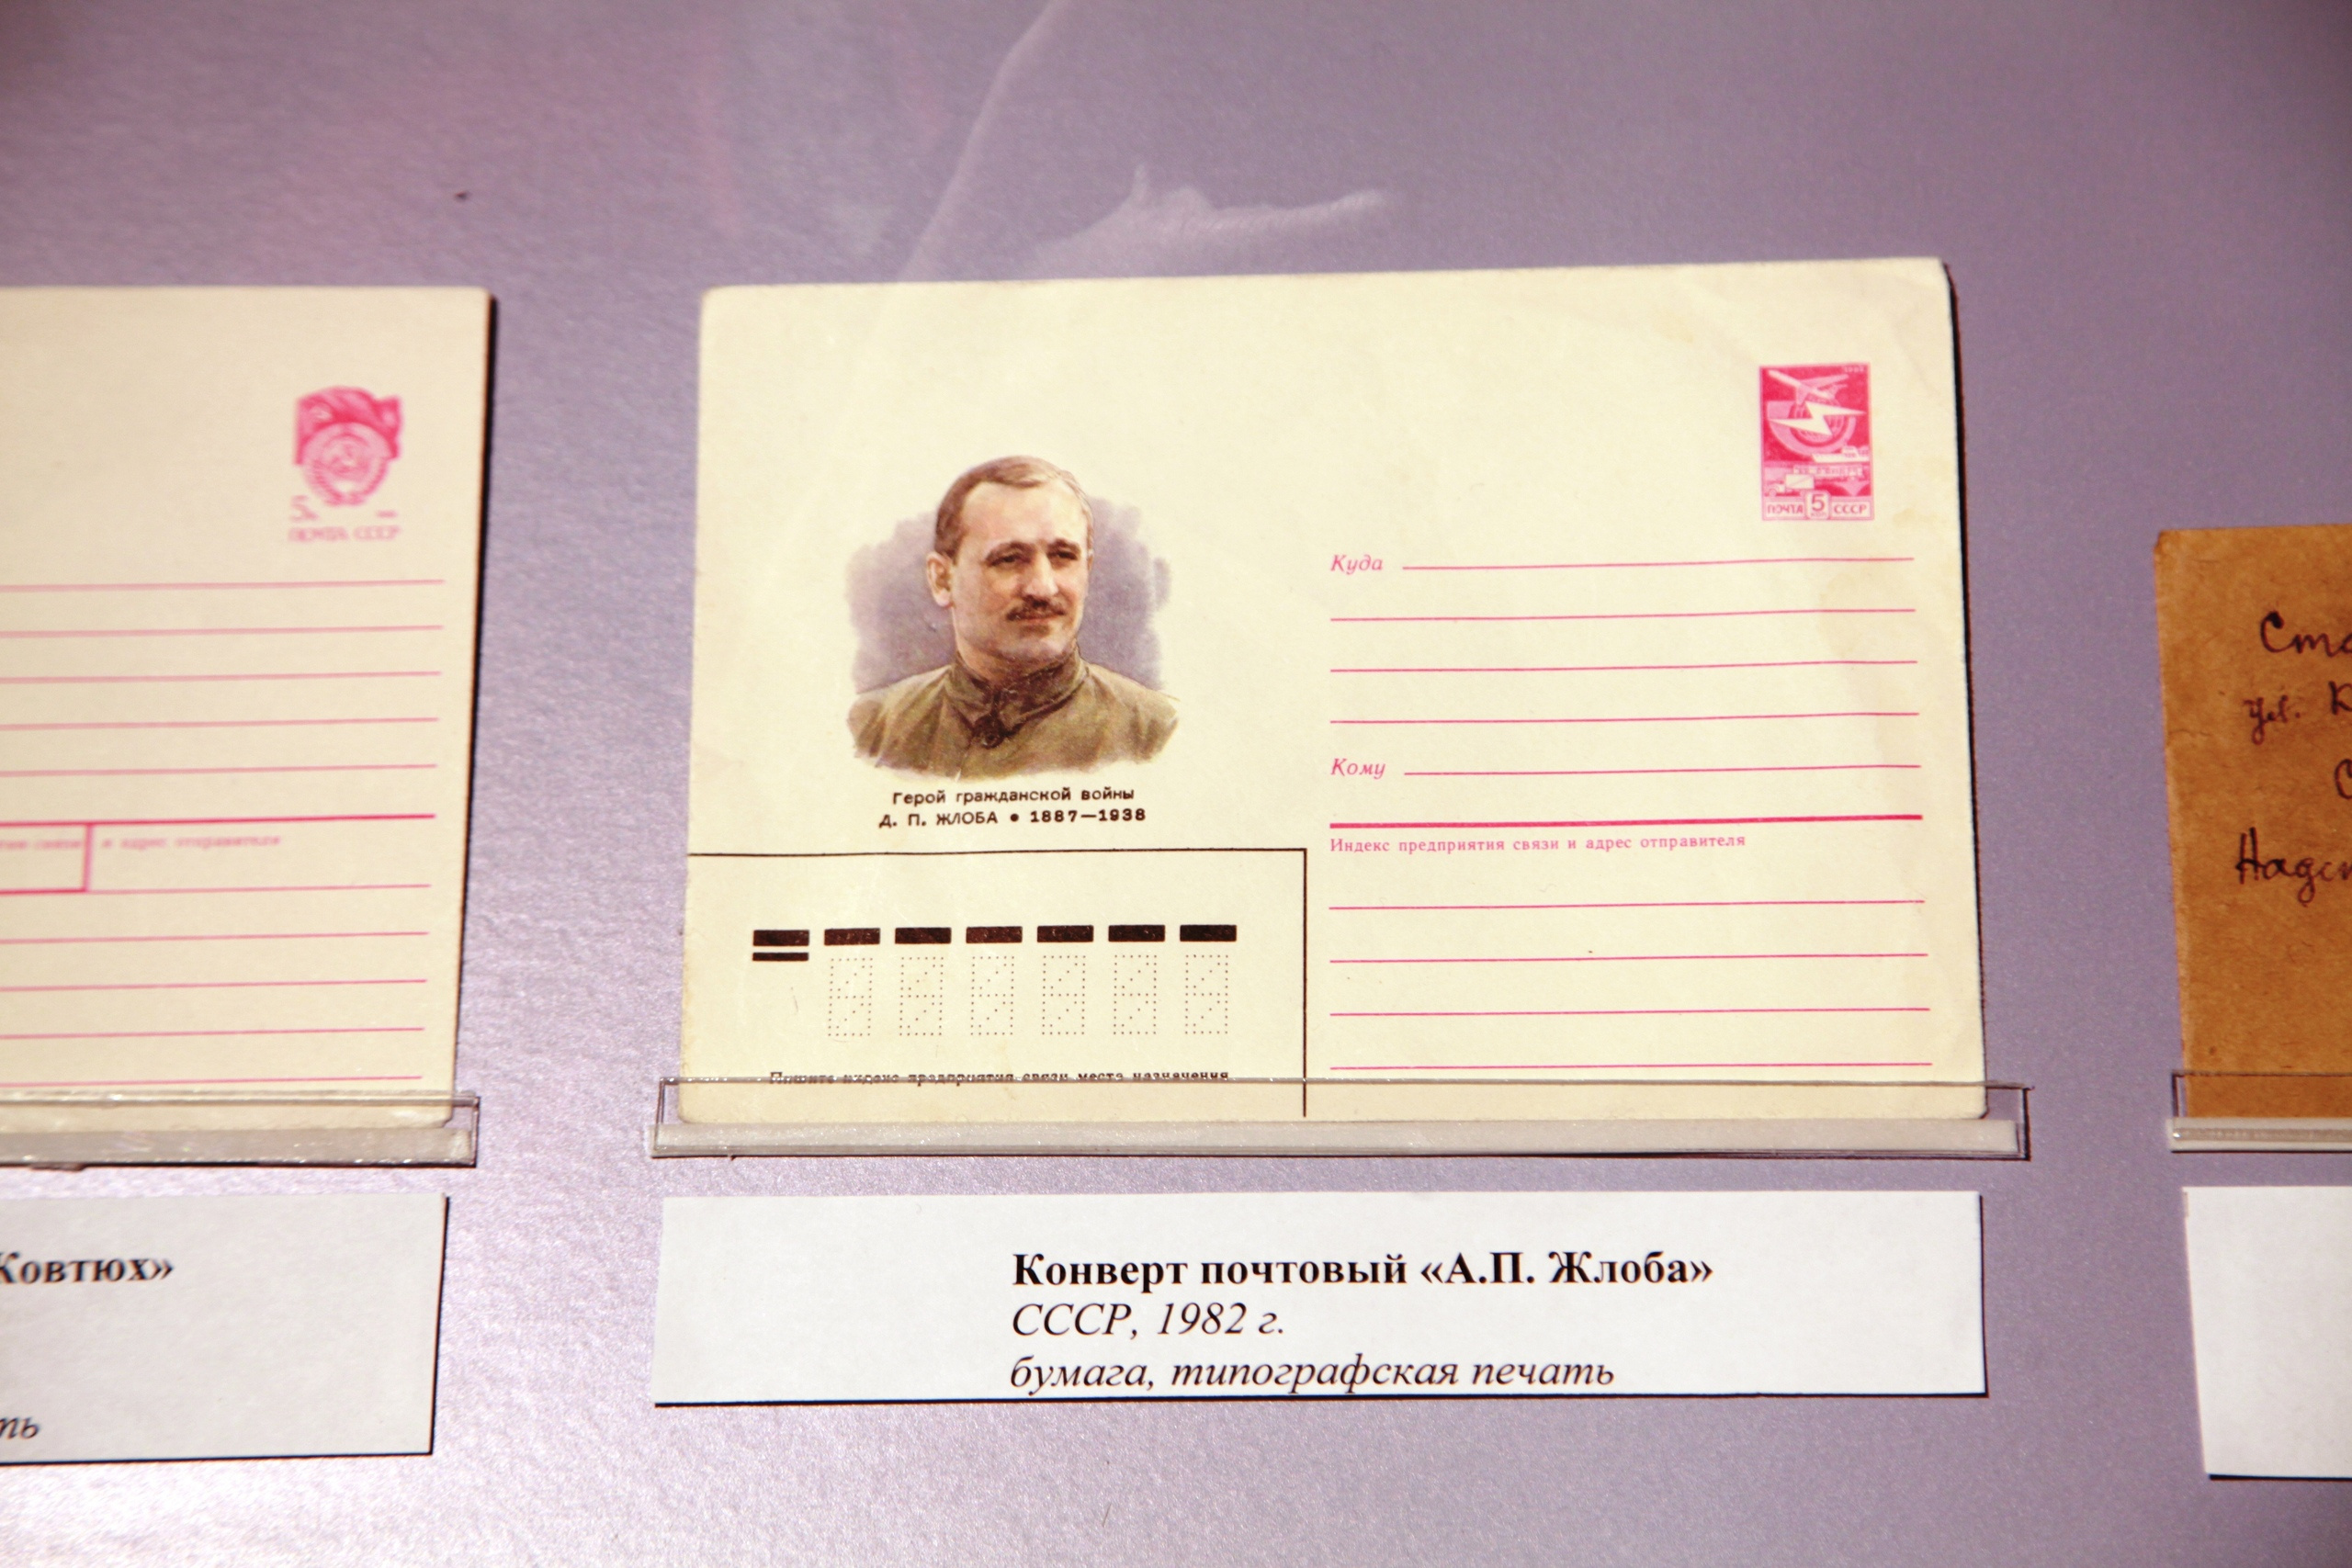 Почтовые конверты вновь стали в ходу только после войны